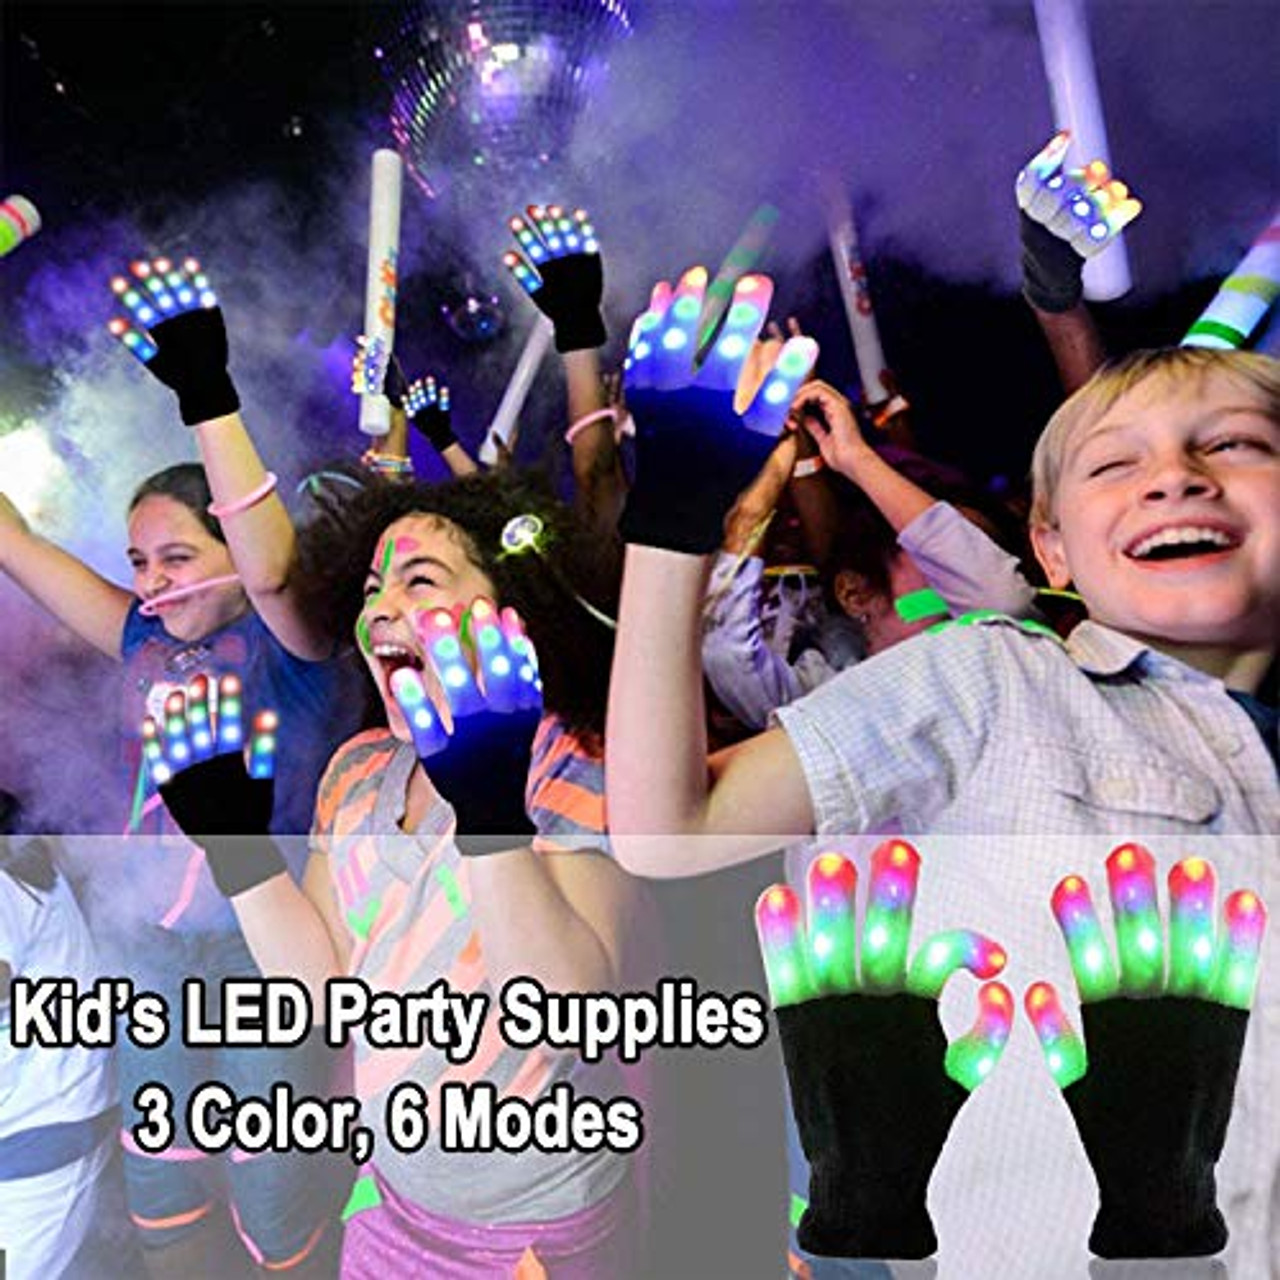 4 Paar LED-Handschuhe, cooles Spielzeug für Kinder und Teenager, LED- Fingerlicht-Handschuhe, blinkende Handschuhe, Strumpffüller, Spielzeug,  Jungen und Mädchen, Geschenk für Weihnachten, Geburtstag, Cosplay,  Kostümparty – OceanBargains